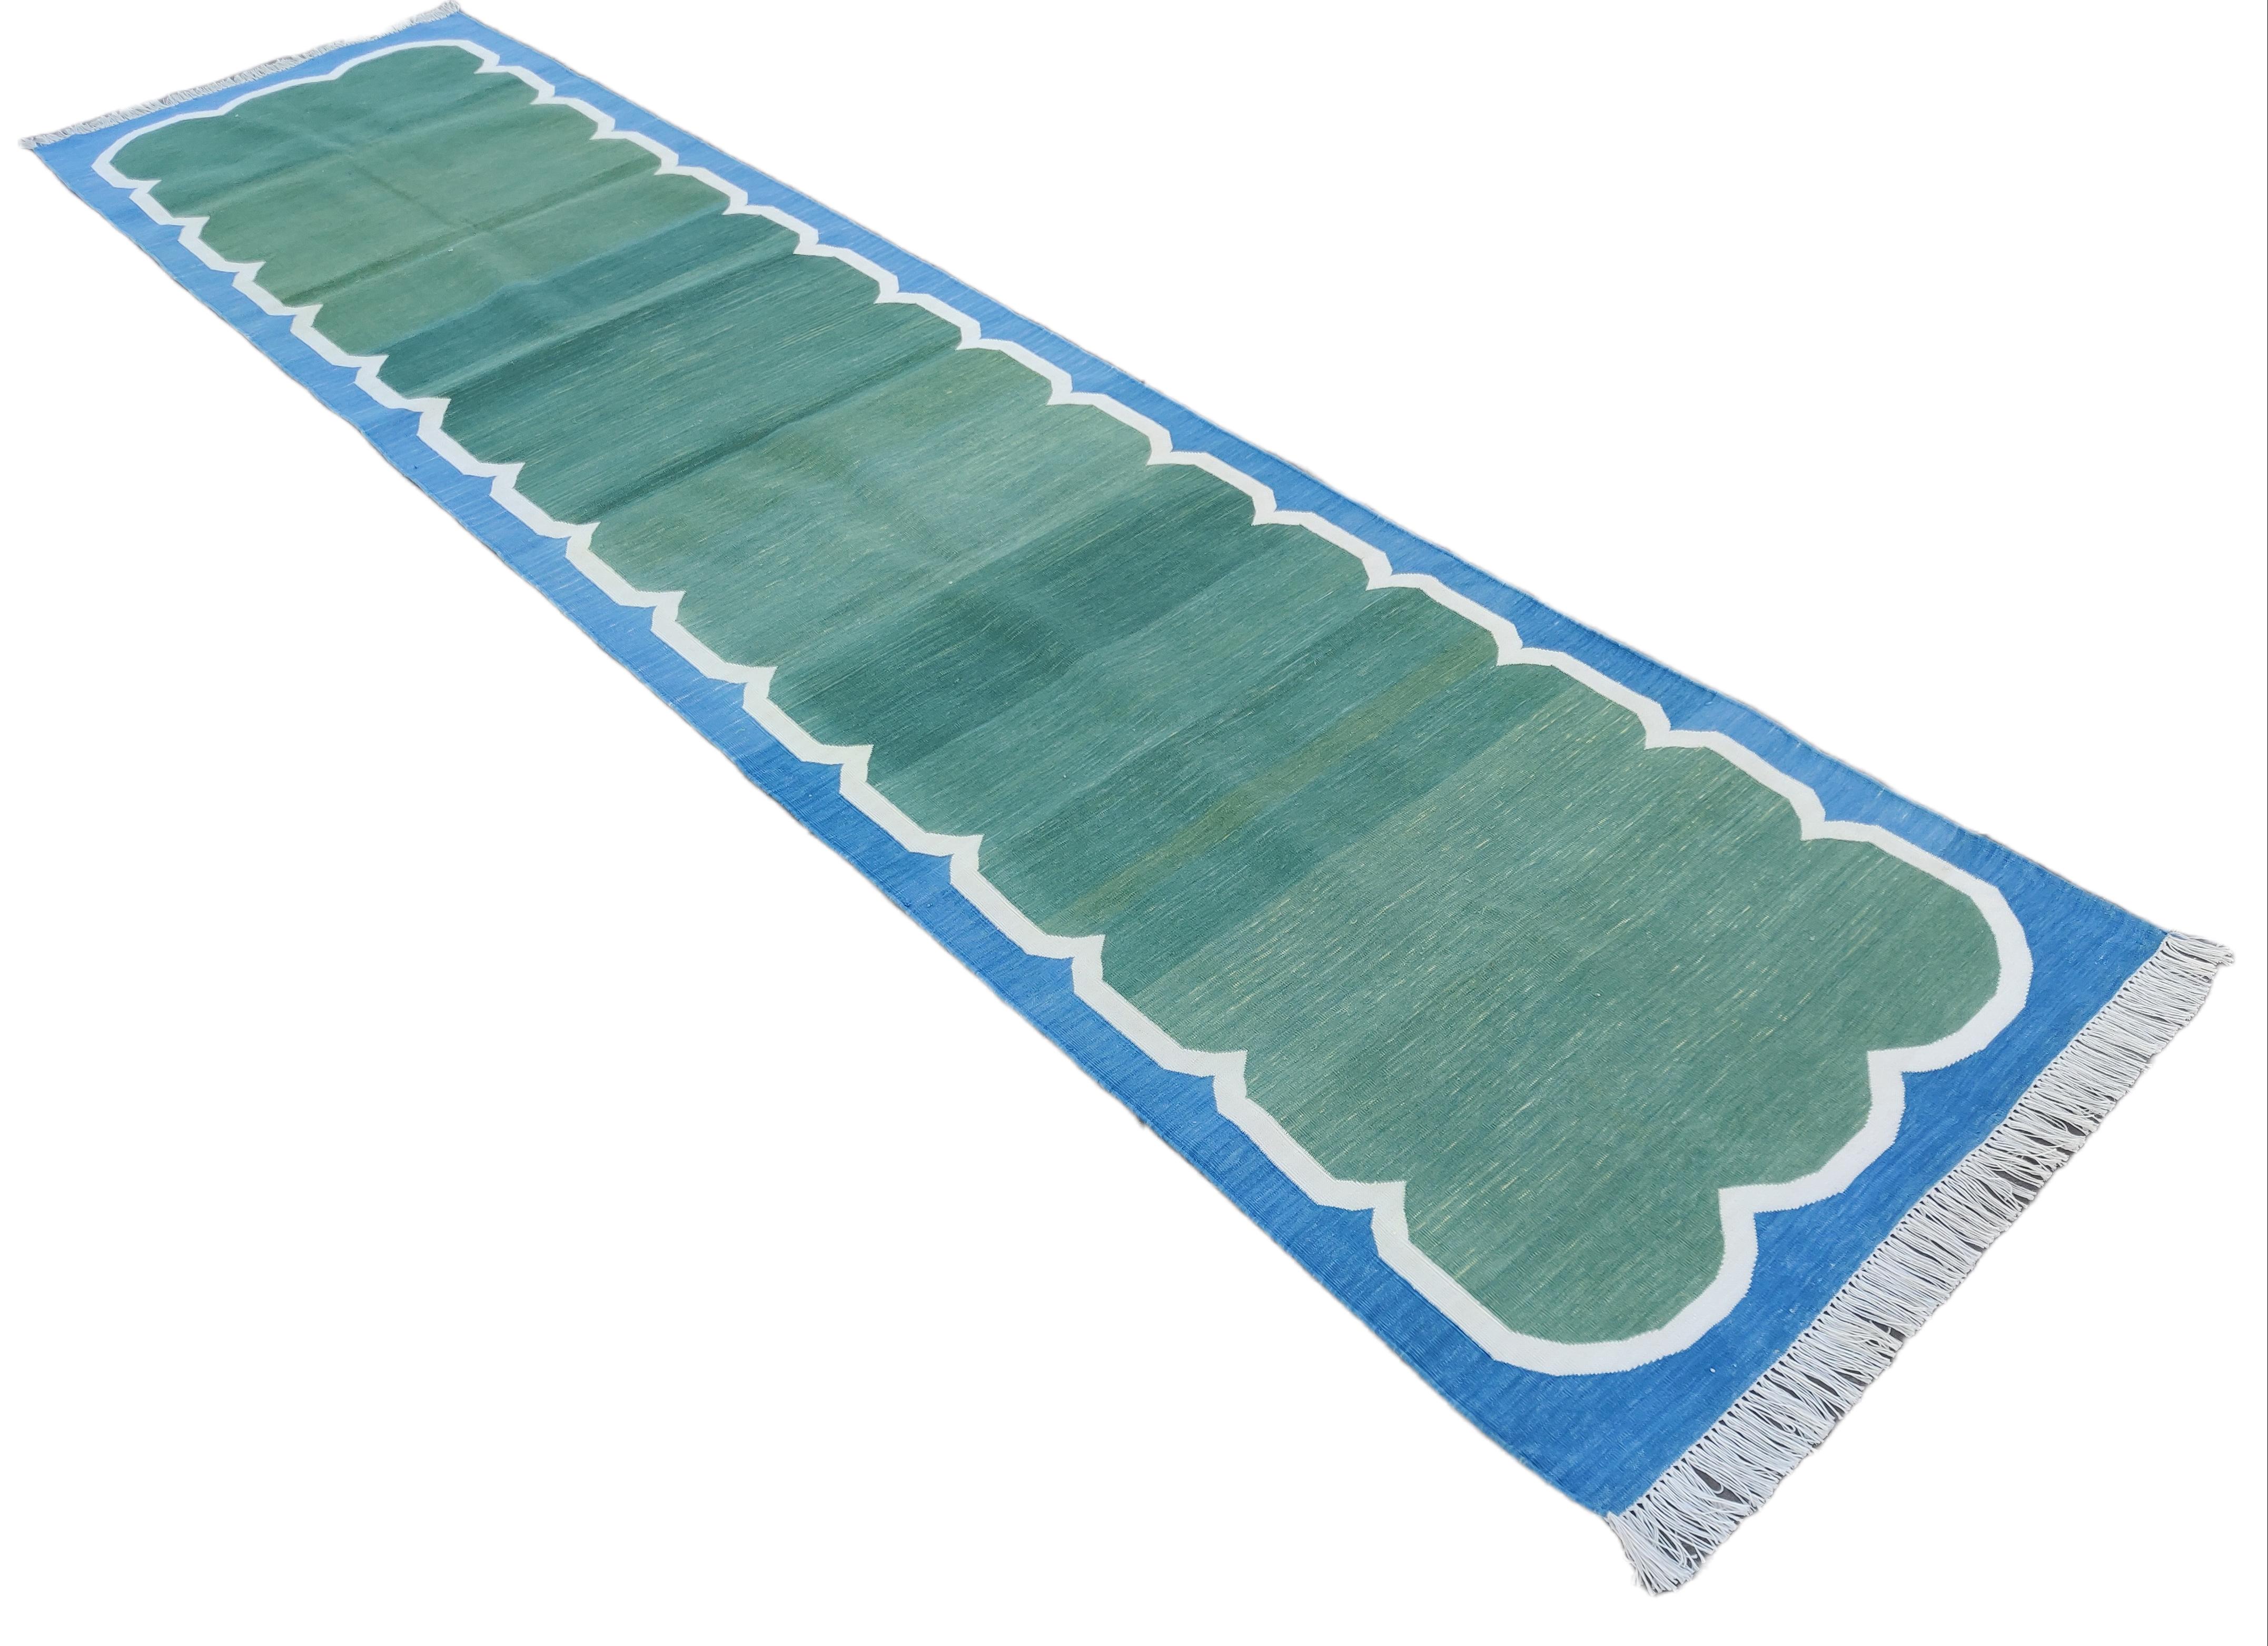 Tapis en coton teint dans la masse, vert forêt et bleu festonné Indian Dhurrie Runner-3'x12'.
Ces dhurries spéciales à tissage plat sont tissées à la main avec du fil 100 % coton 15 plis. En raison des techniques de fabrication spéciales utilisées